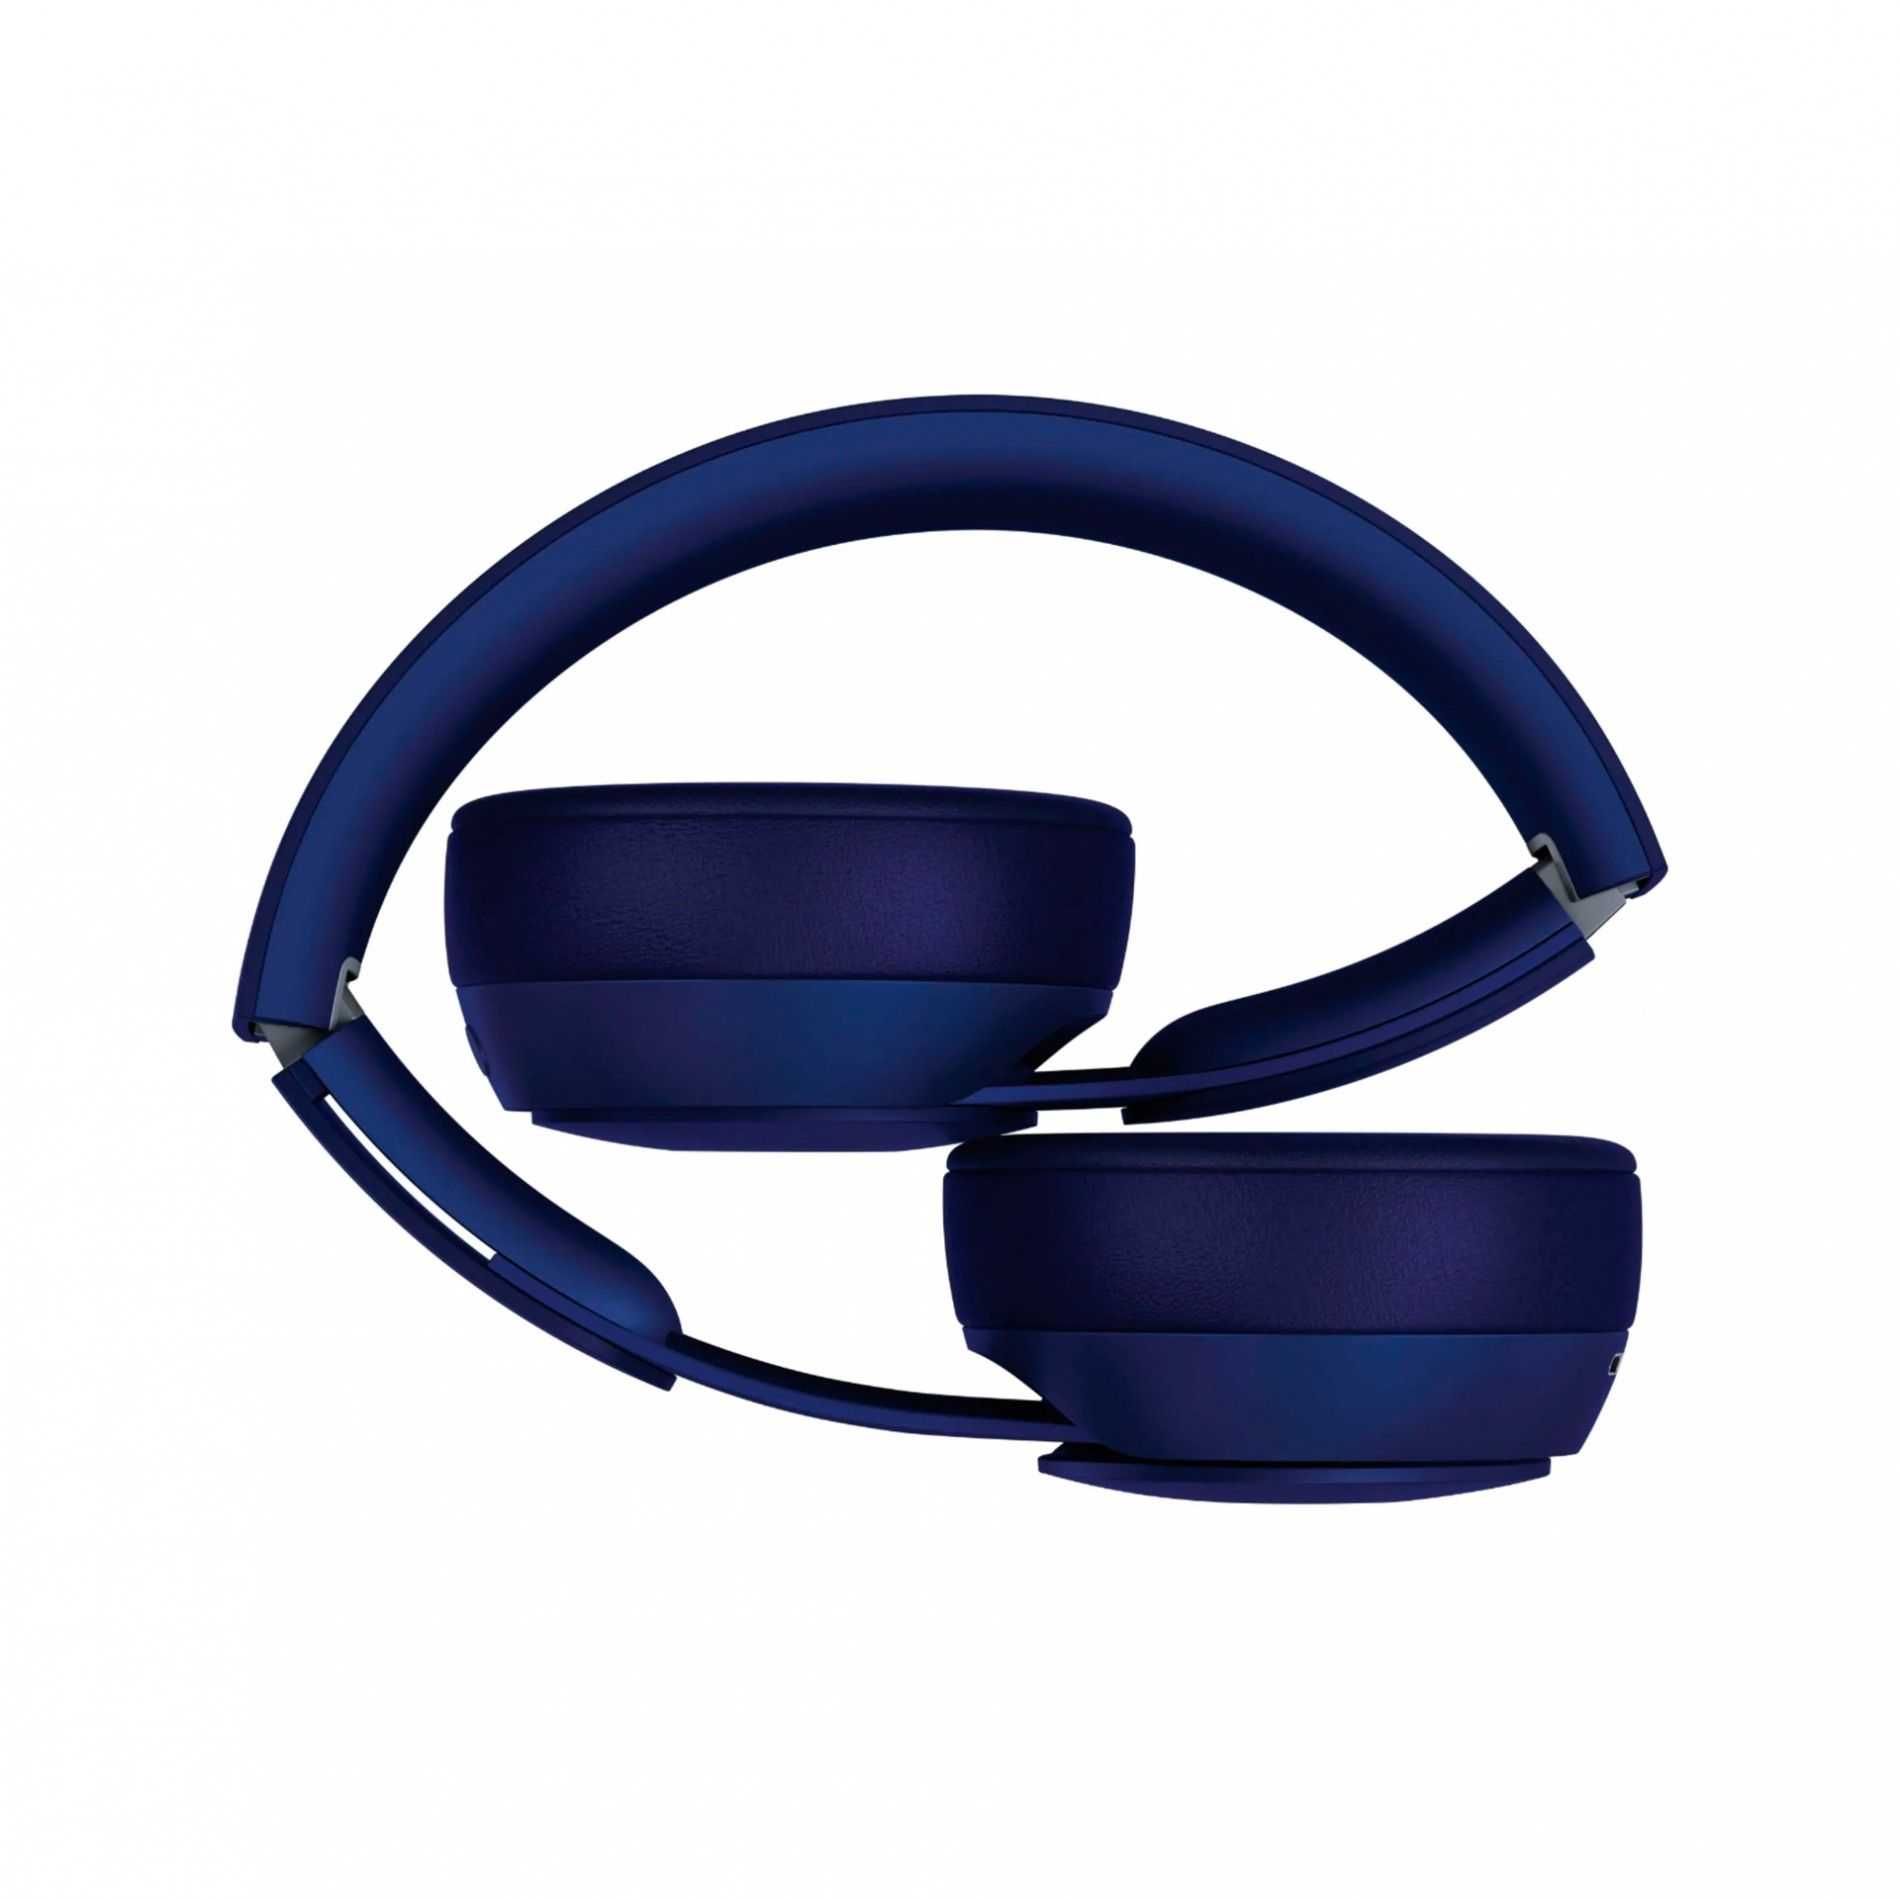 Auscultador Wireless Beats Solo Pro Azul Escuro A++ Garantia